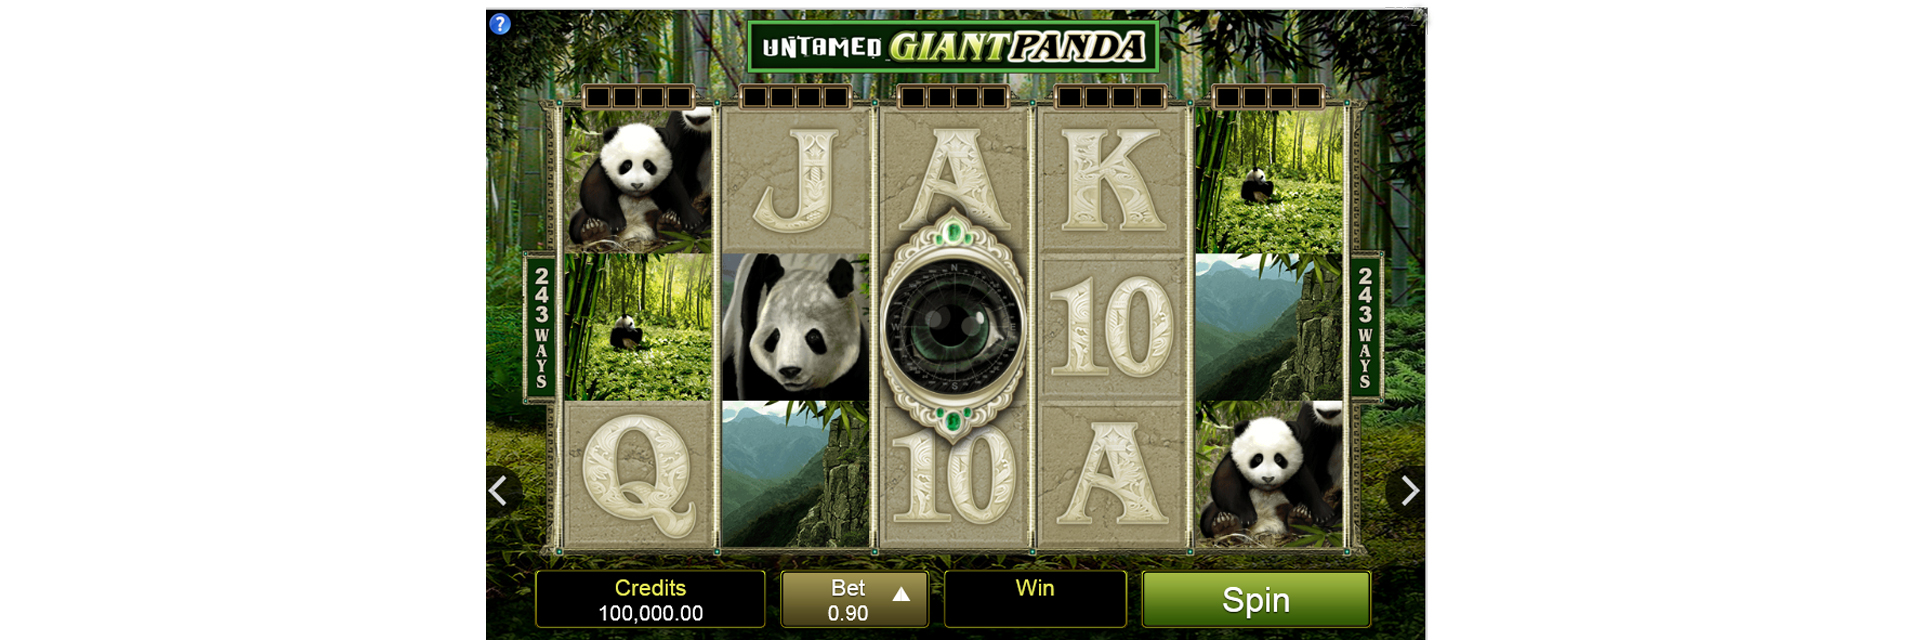 Panda slot machine.